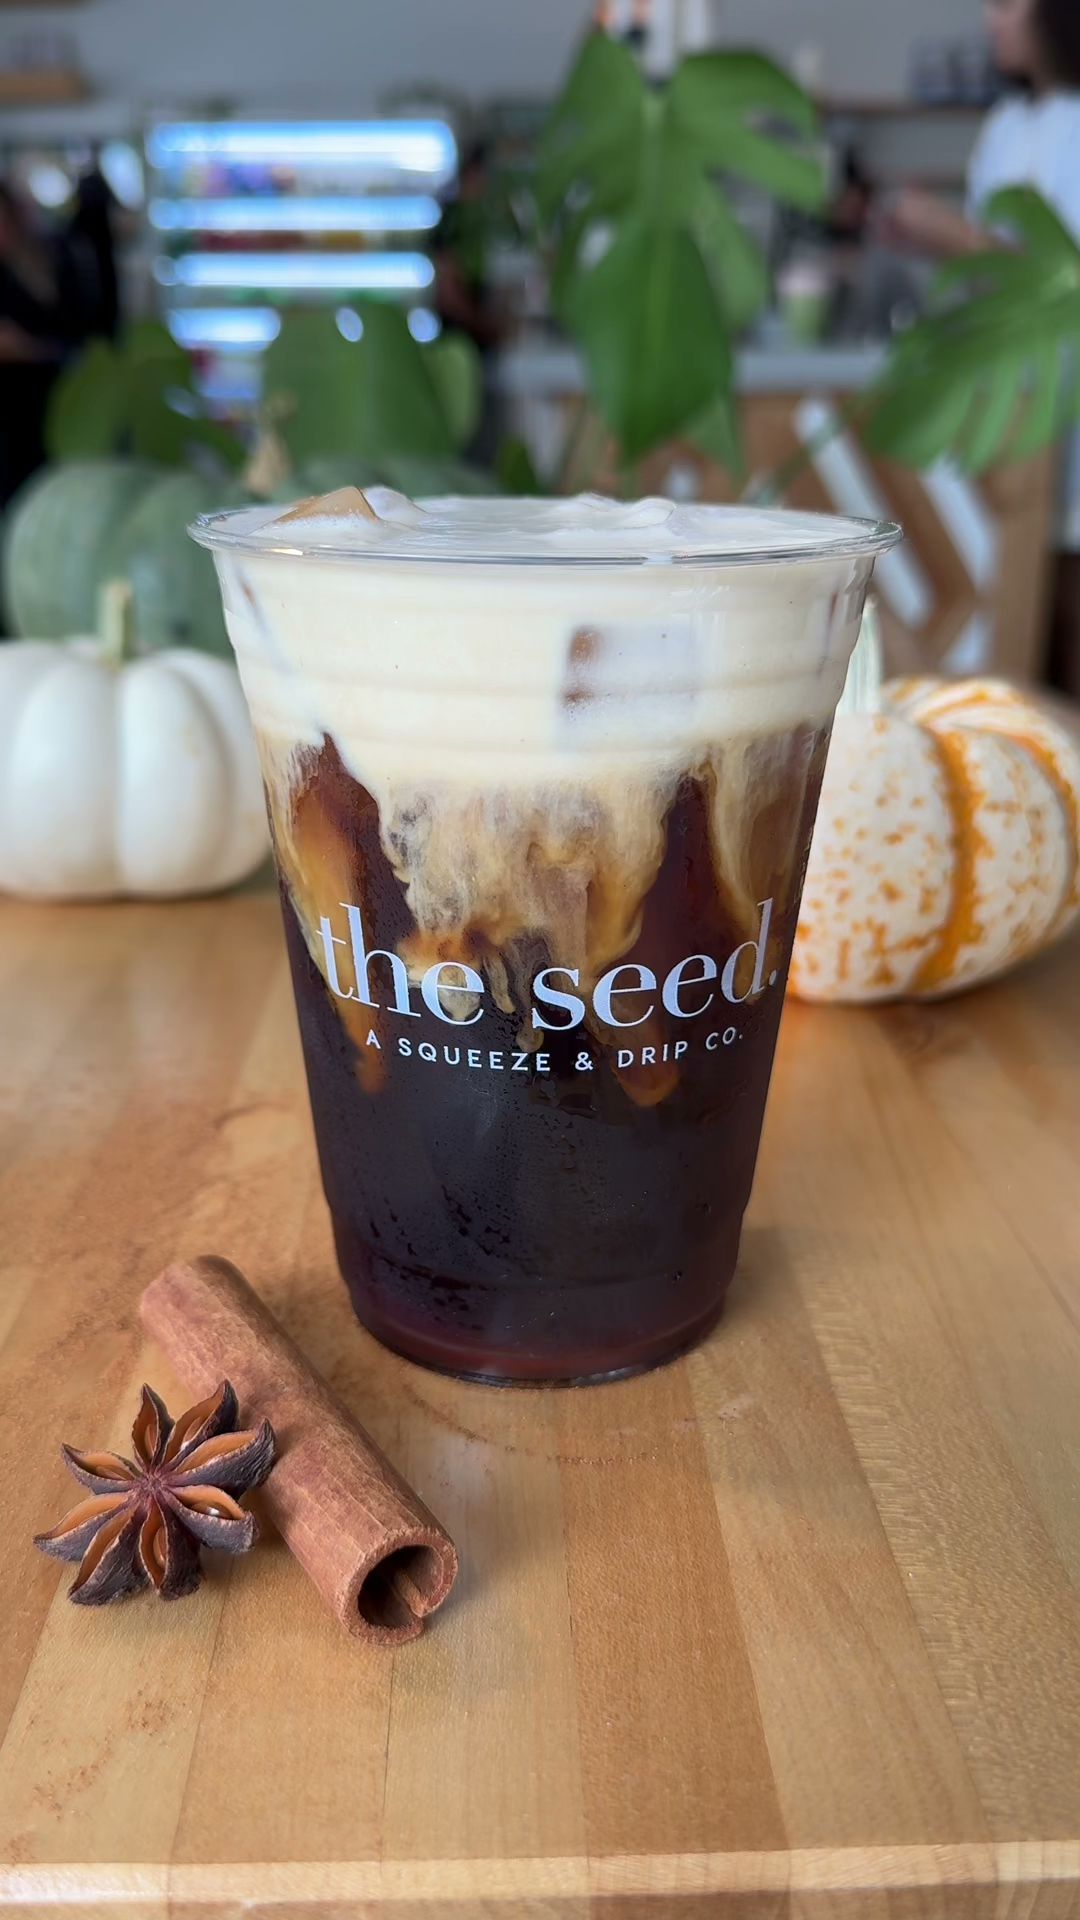 the seed. Coffee + Juice Bar